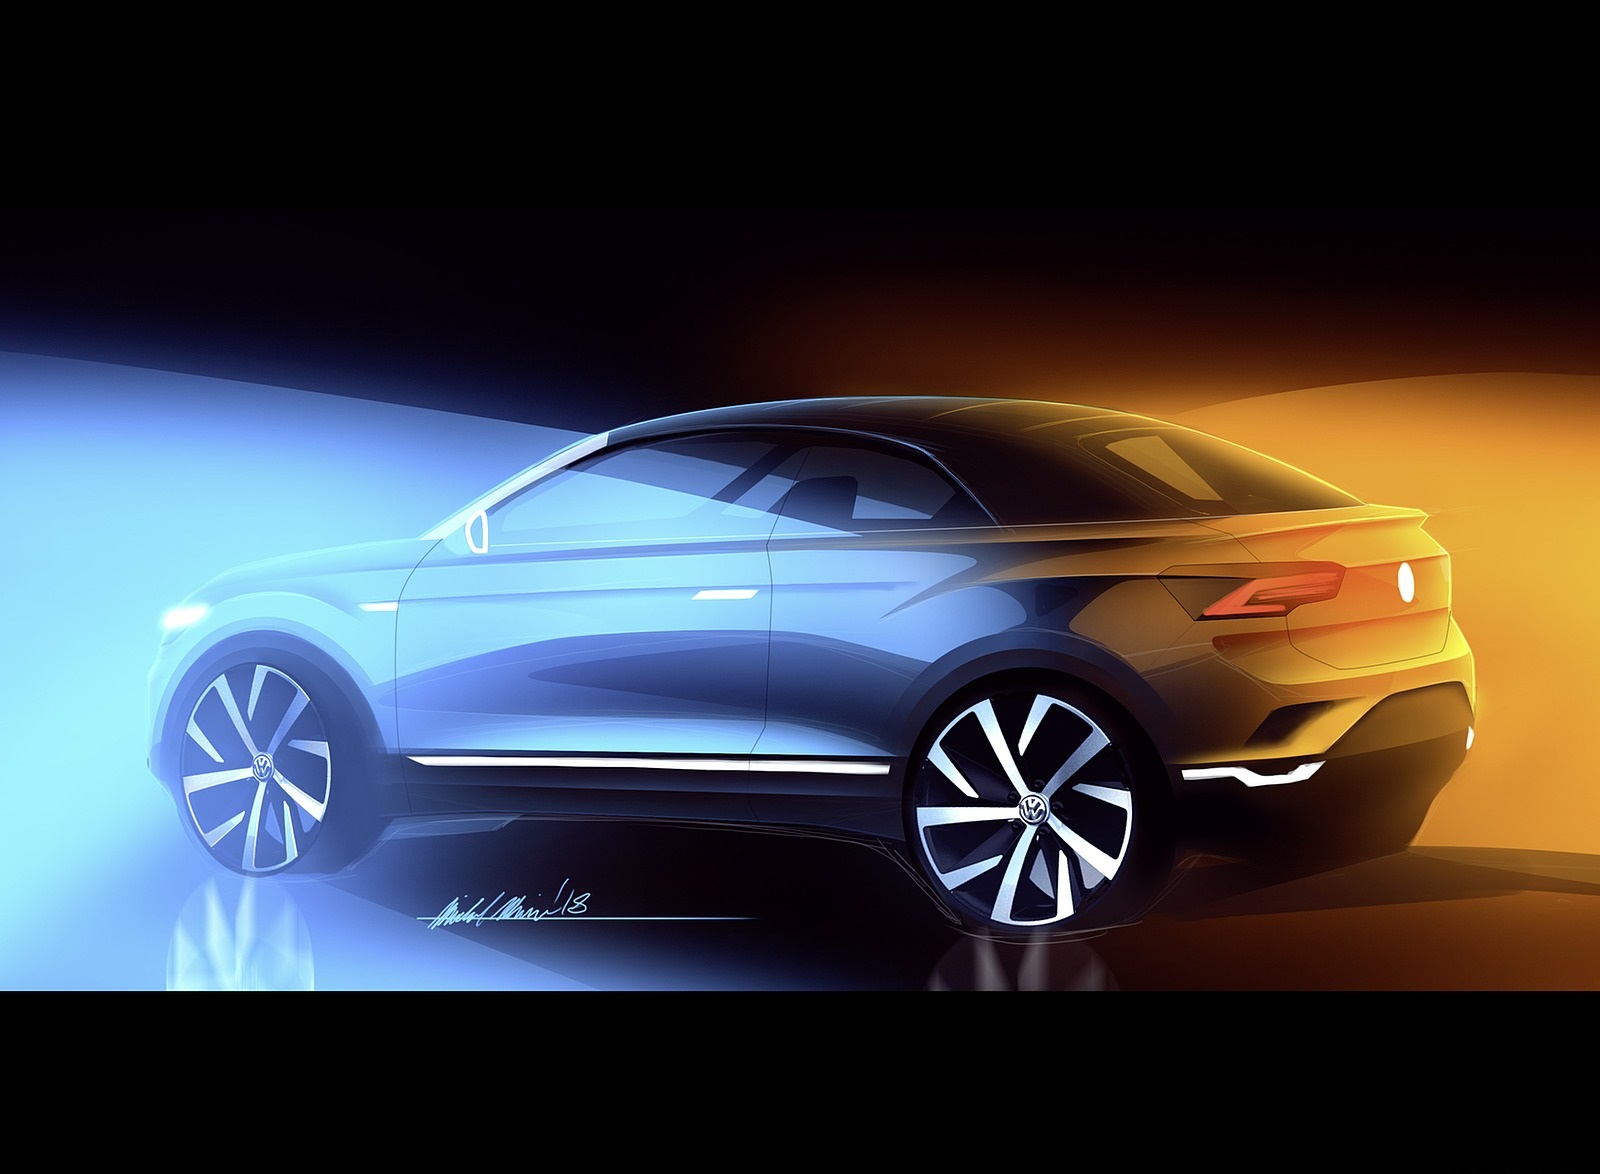 2020 Volkswagen T-Roc Cabriolet Design Sketch Wallpapers #205 of 205